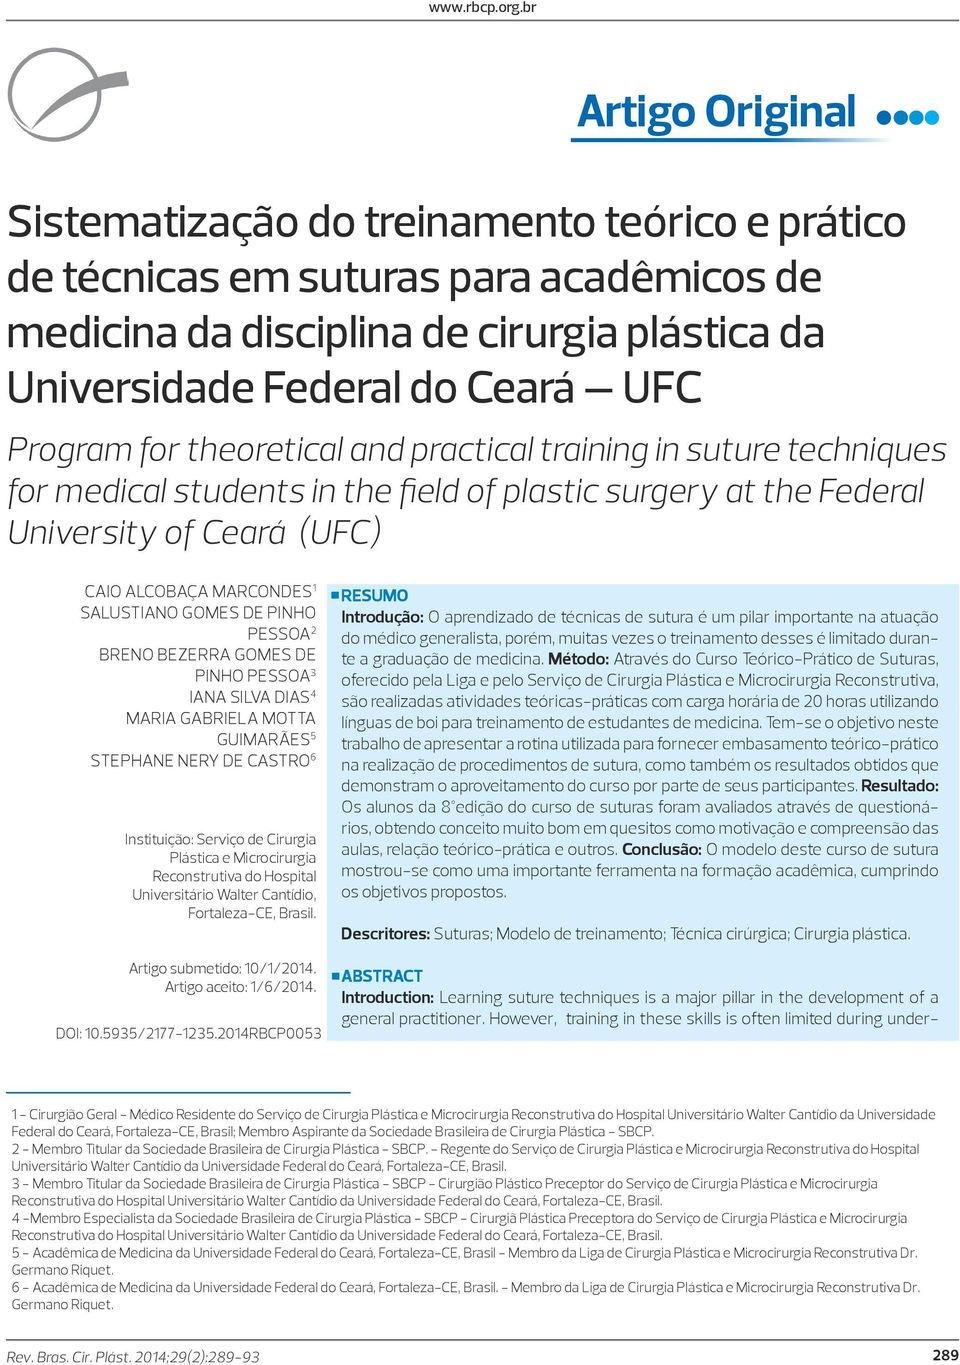 Federal University of Ceará (UFC) CAIO ALCOBAÇA MARCONDES 1 SALUSTIANO GOMES DE PINHO PESSOA 2 BRENO BEZERRA GOMES DE PINHO PESSOA 3 IANA SILVA DIAS 4 MARIA GABRIELA MOTTA GUIMARÃES 5 STEPHANE NERY